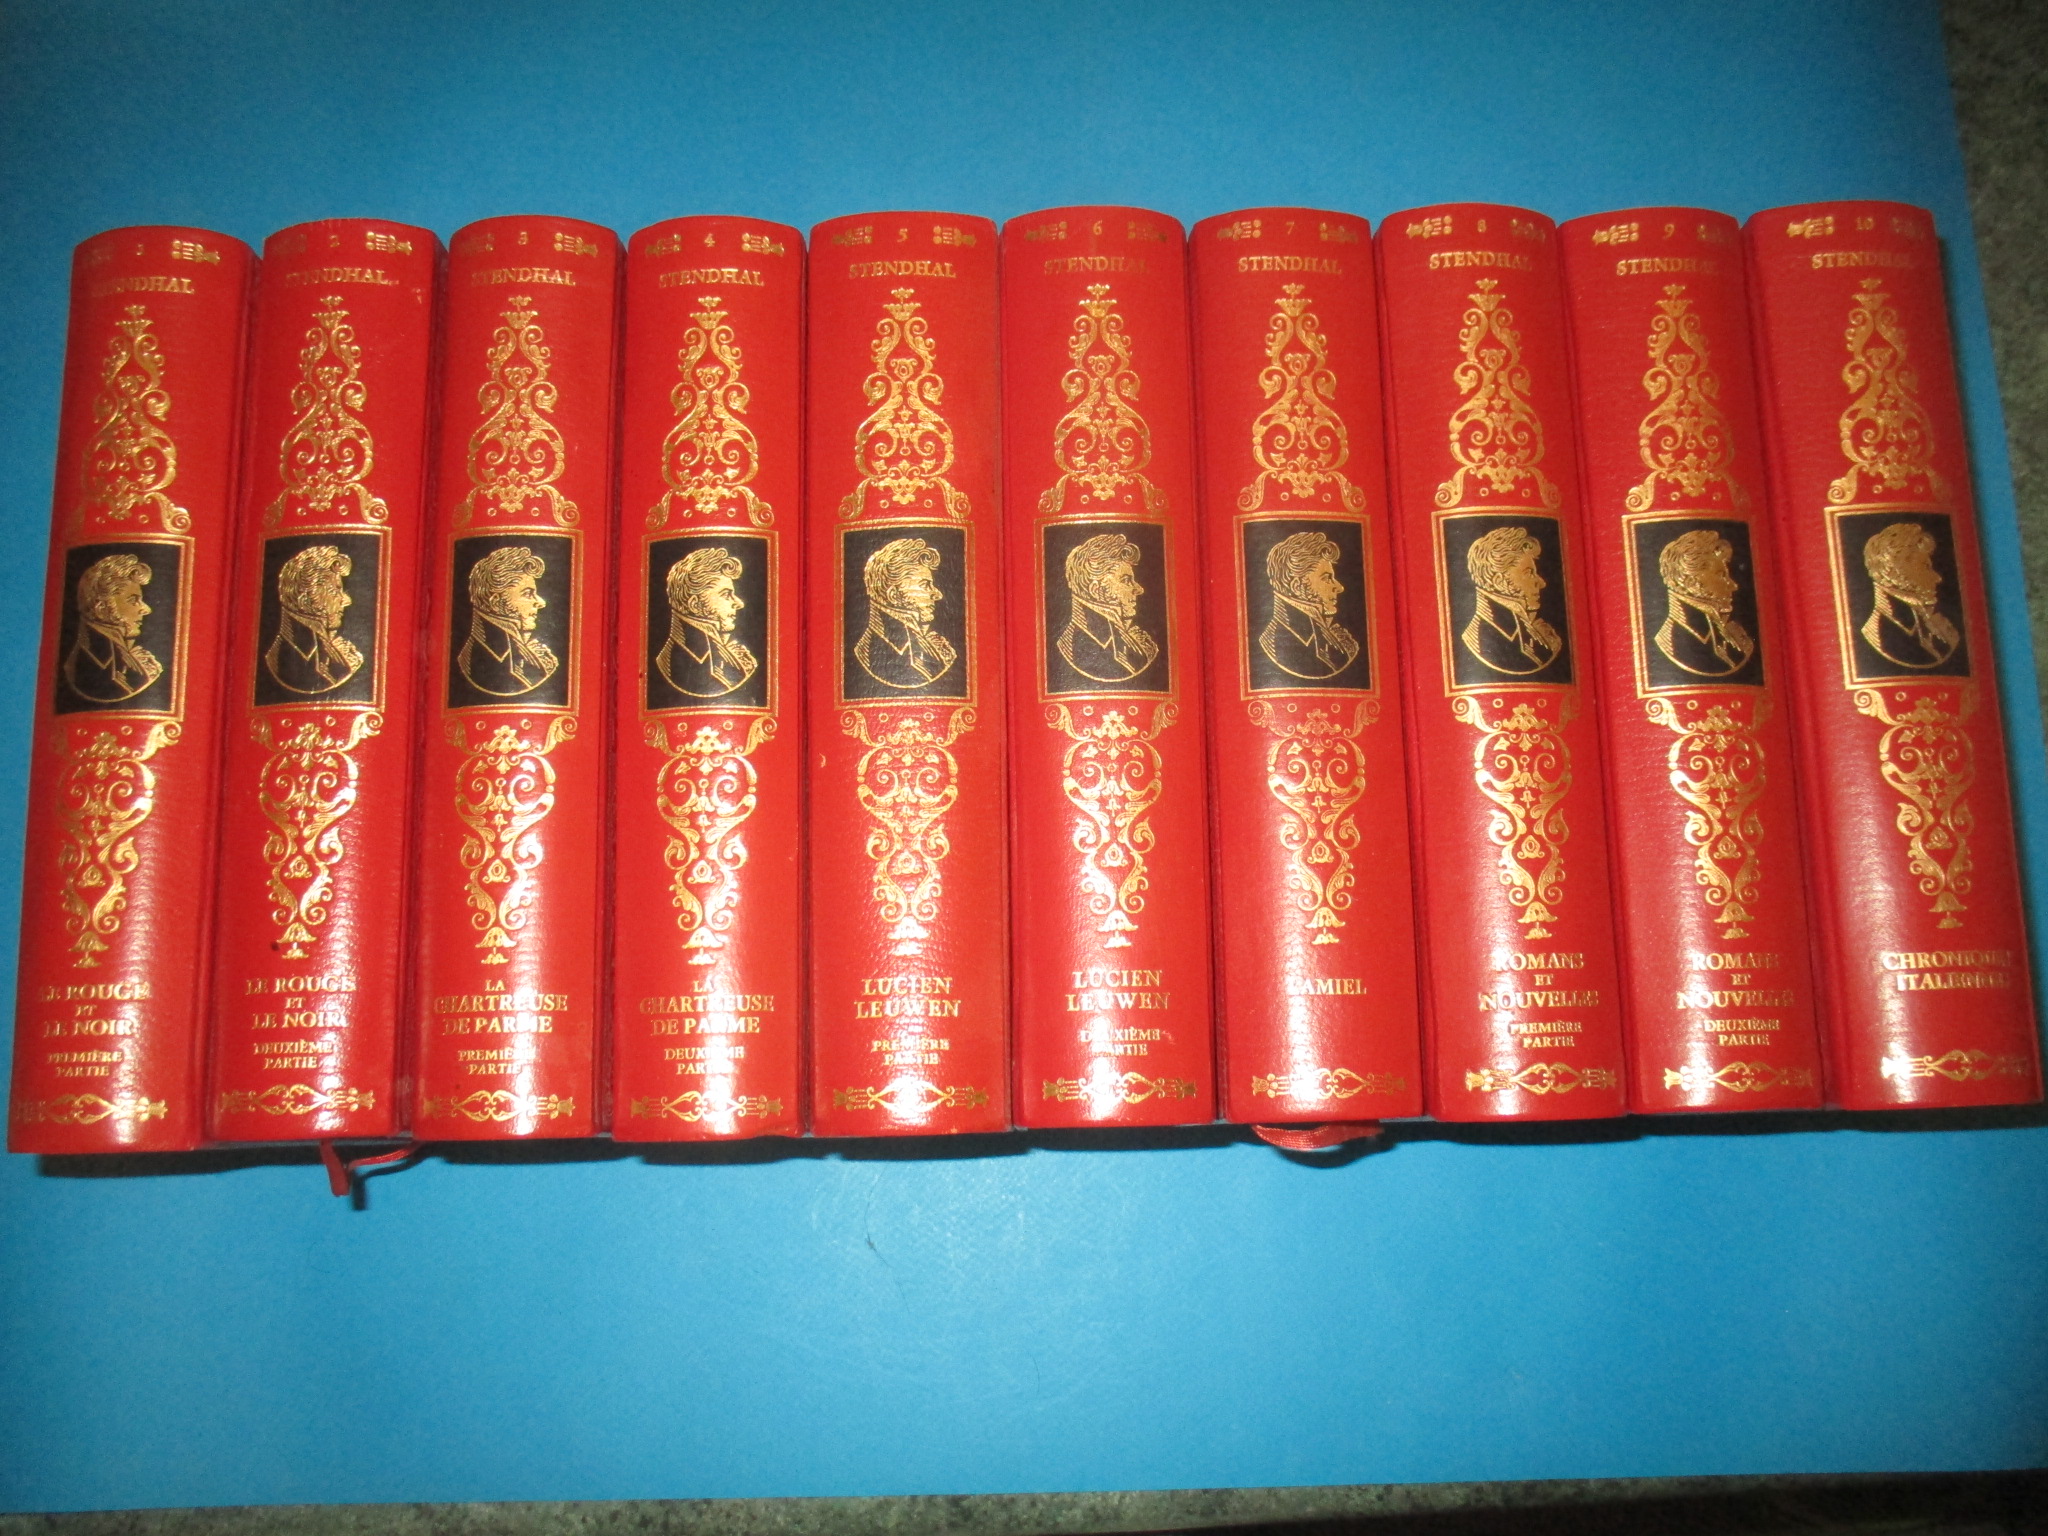 Les Oeuvres romanesques de Stendhal, complet en 10 volumes, Jean de Bonnot 1971-72